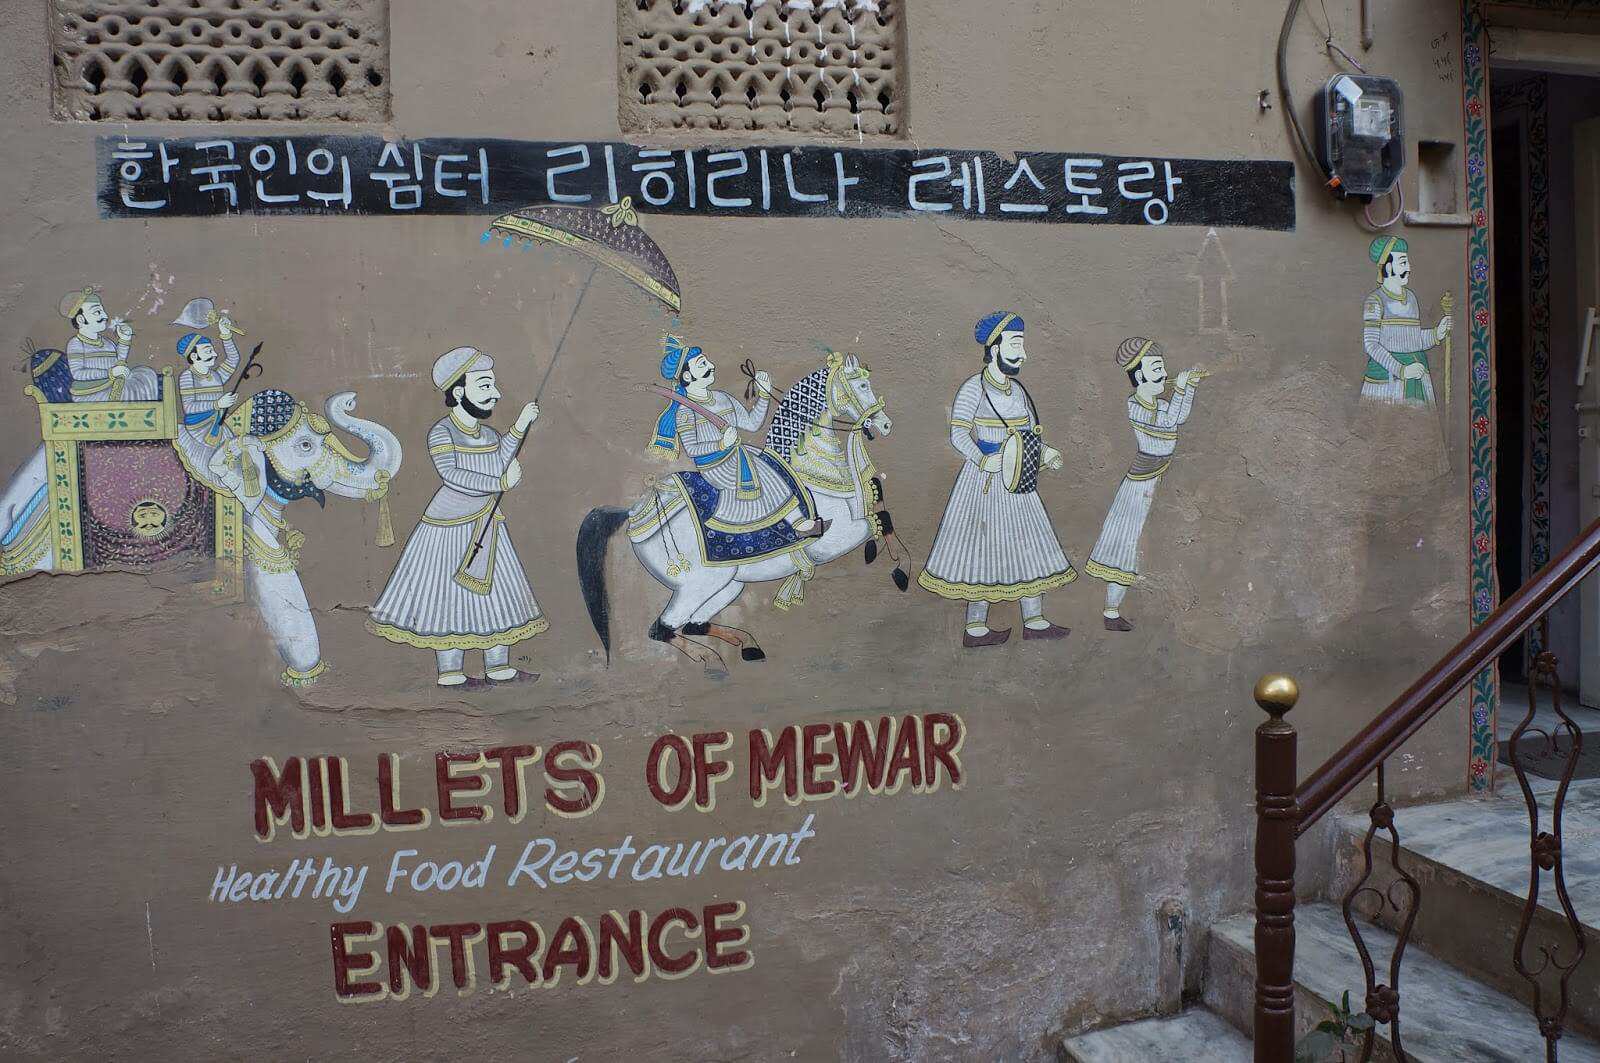 Millets of Mewar